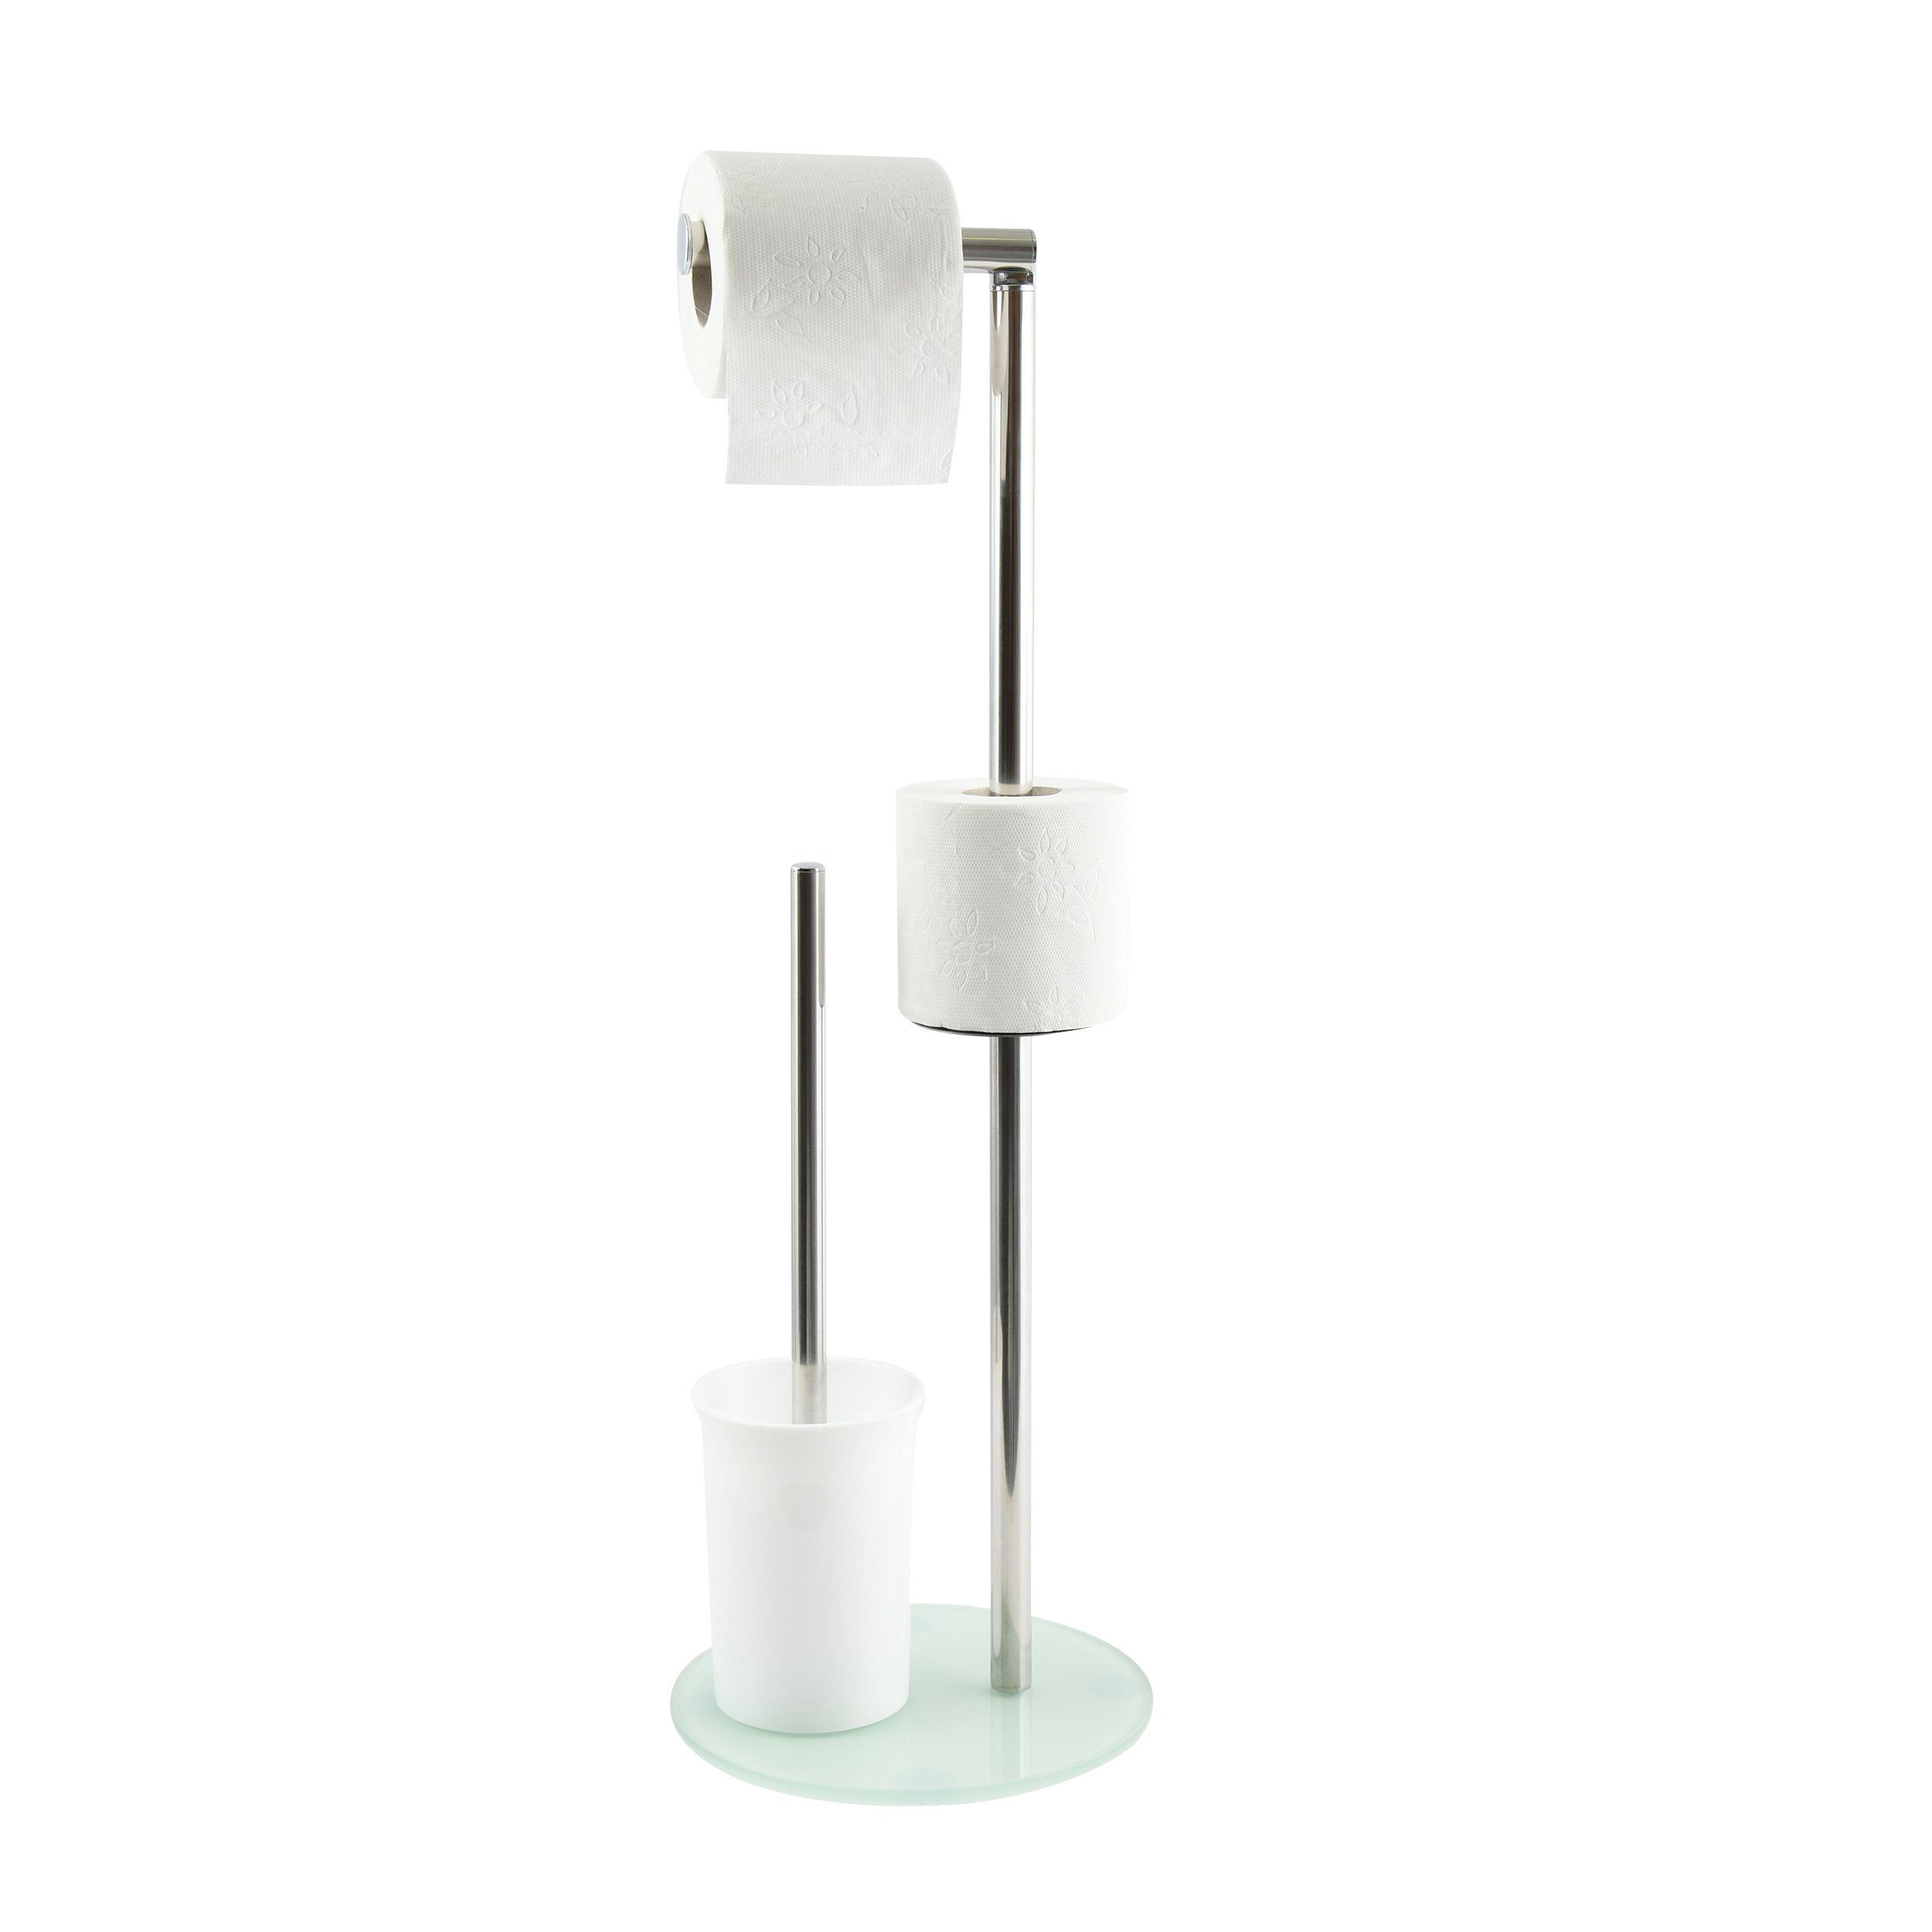 MSV Toilettenpapierhalter BERGAMO, WC Standgarnitur, 3 in 1: Toilettenbürste mit Rollenhalter und Ersatzrollen-Aufbewahrung, Edelstahl, farbiges Glas, 22x60 cm, weiß